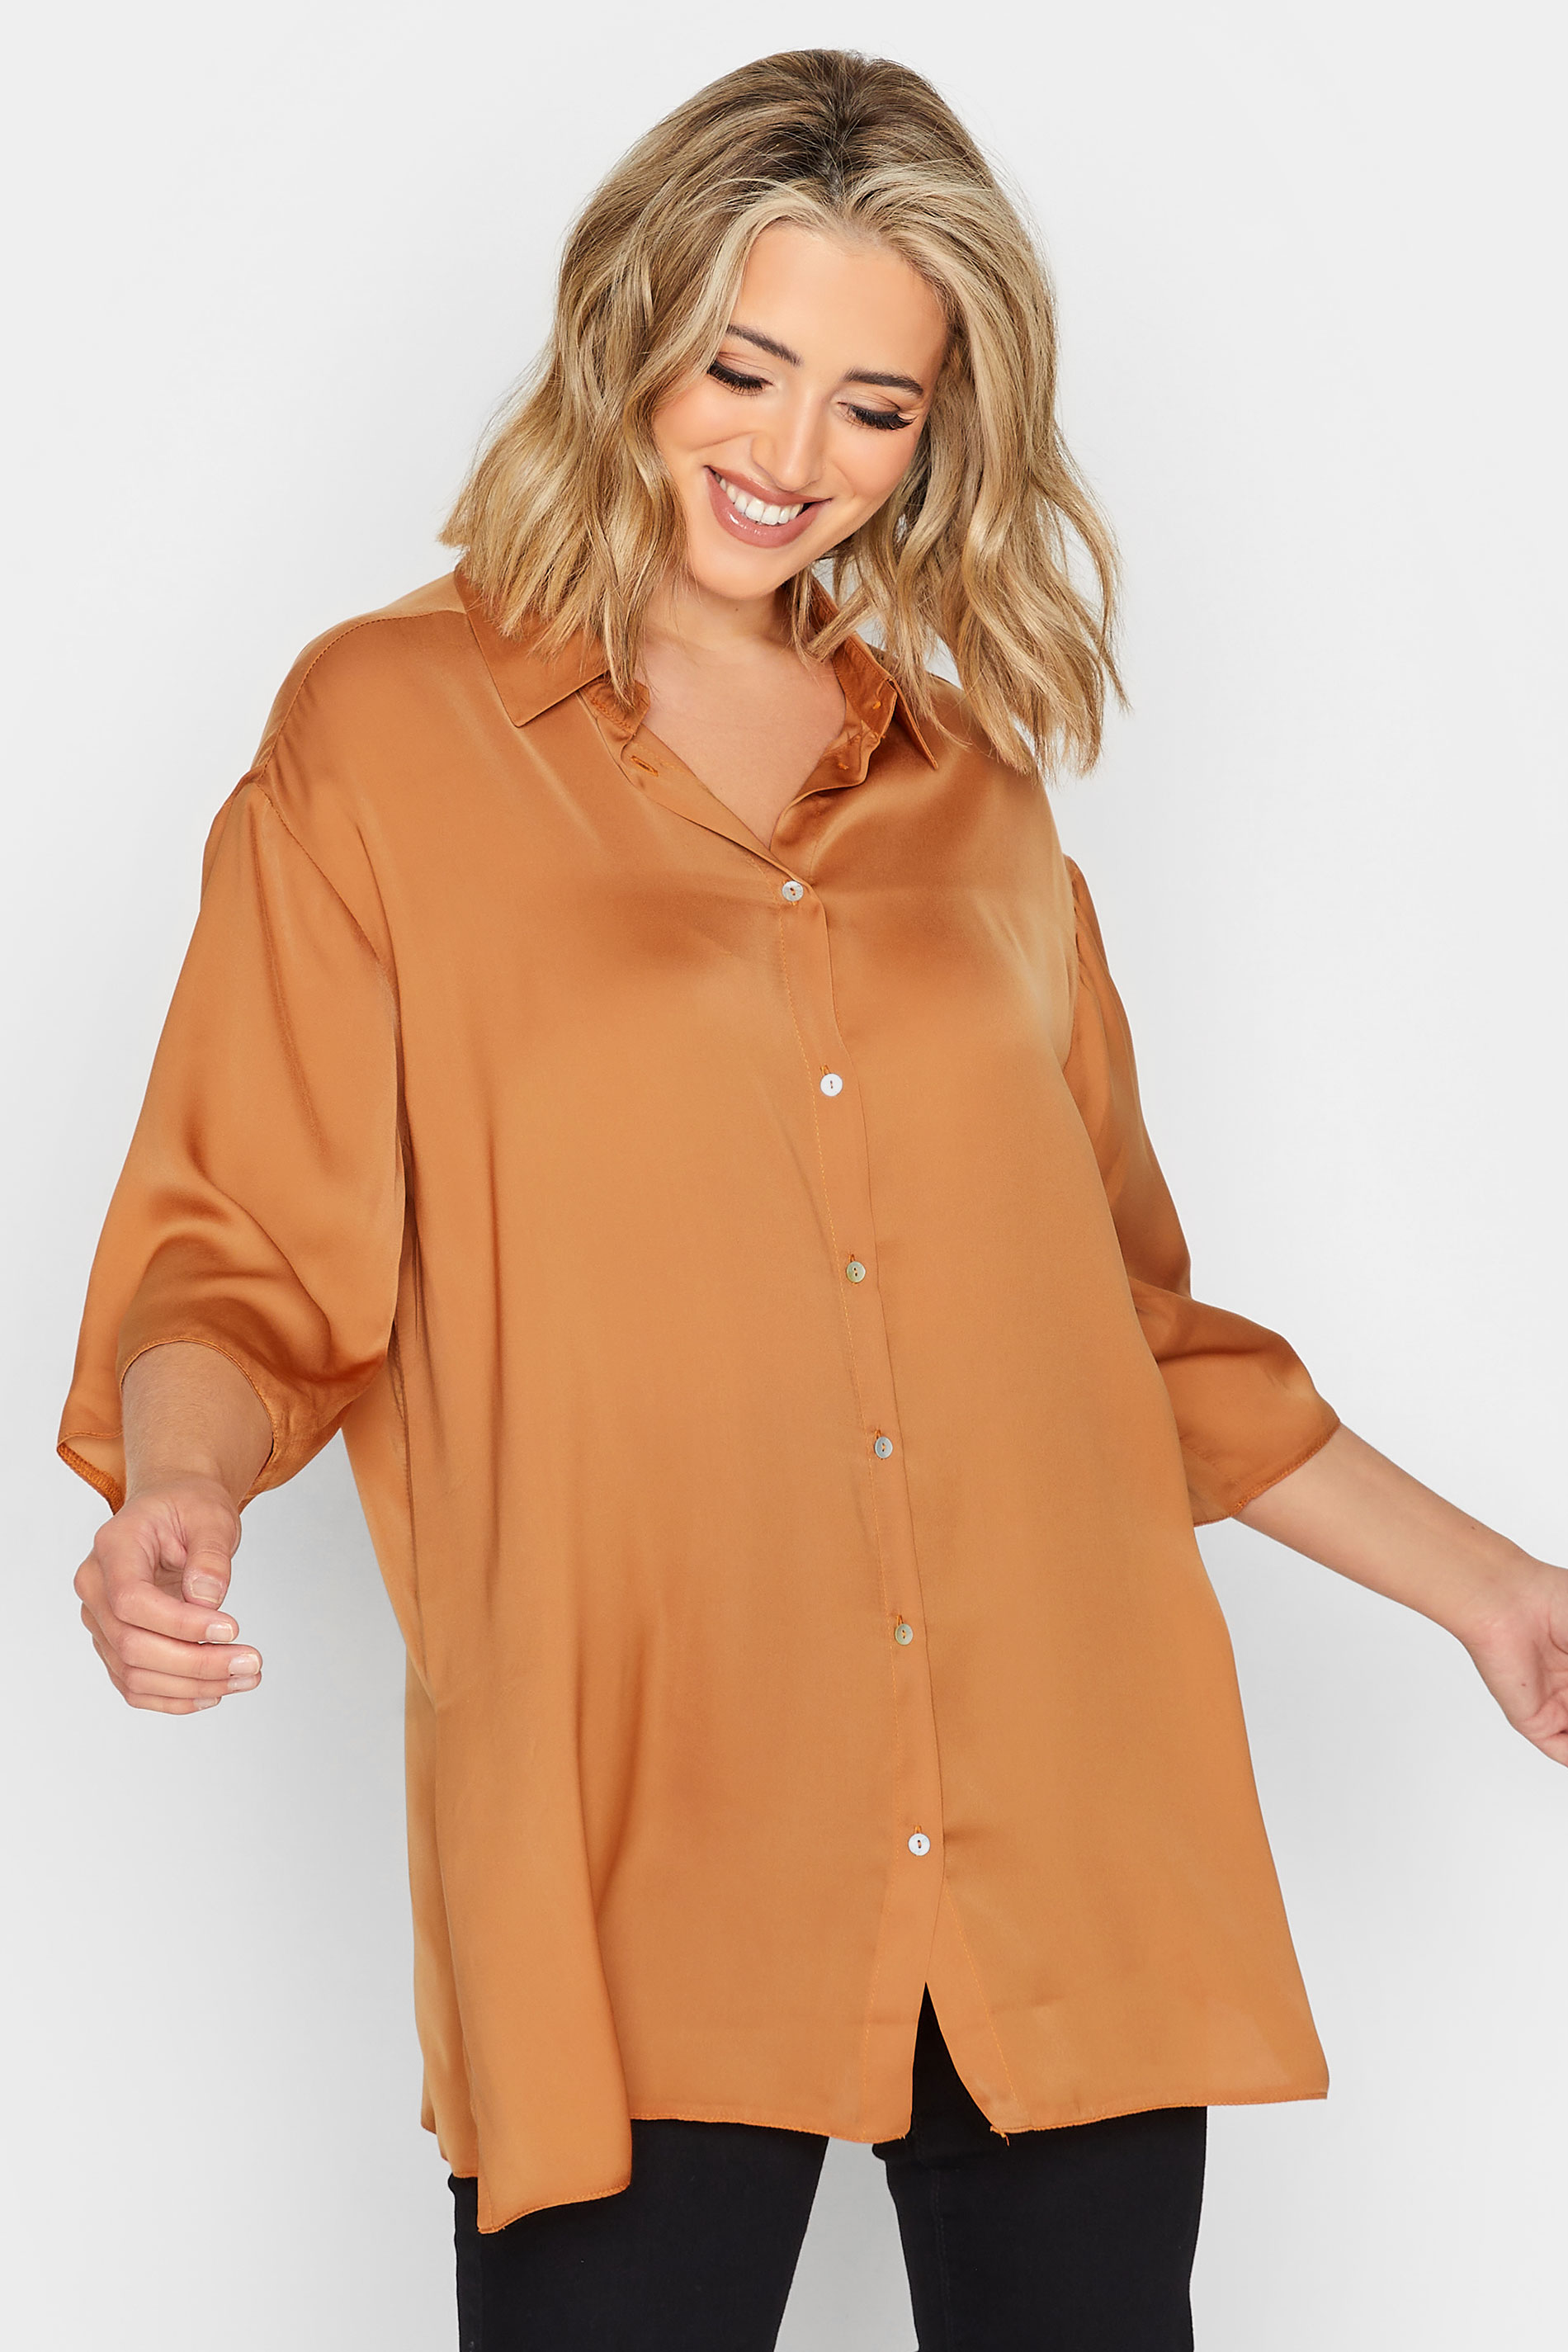 YOURS Plus Size Orange Satin Shirt | Yours Clothing 1